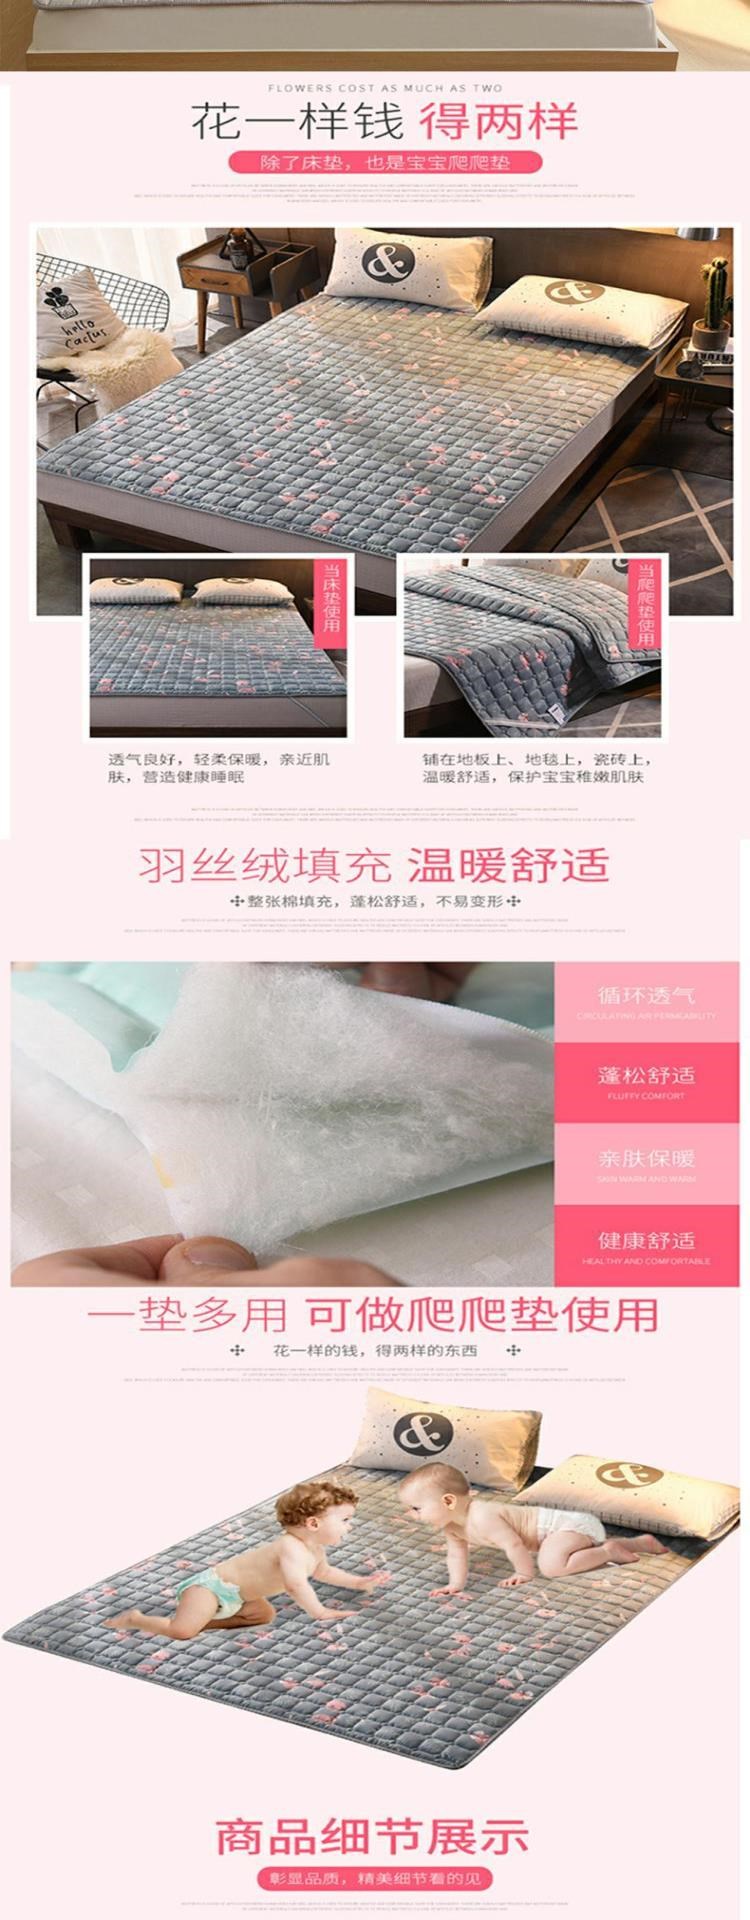 Nệm giường mỏng đệm chống trượt 1.8x2.0 mét giường đôi đệm chăn gia đình có thể giặt được - Nệm